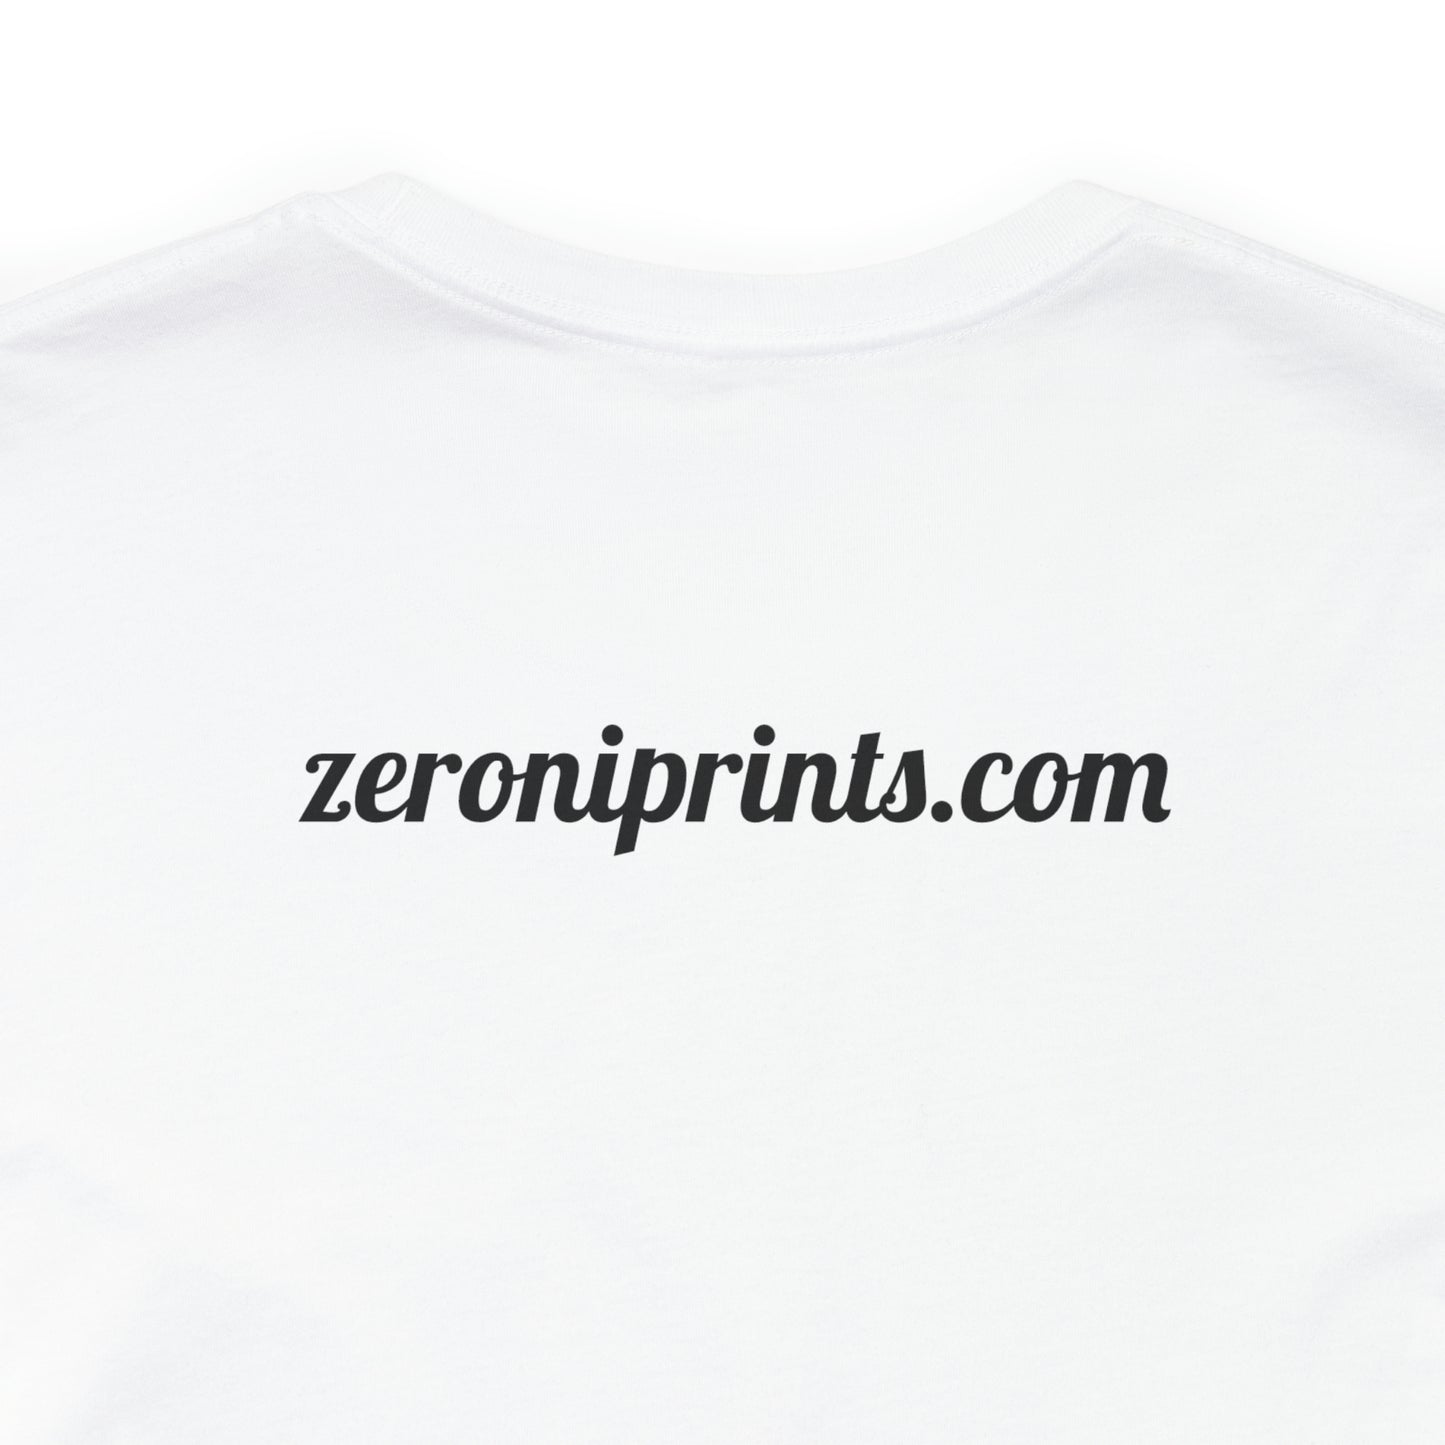 Zeroni Prints Sweet Tee